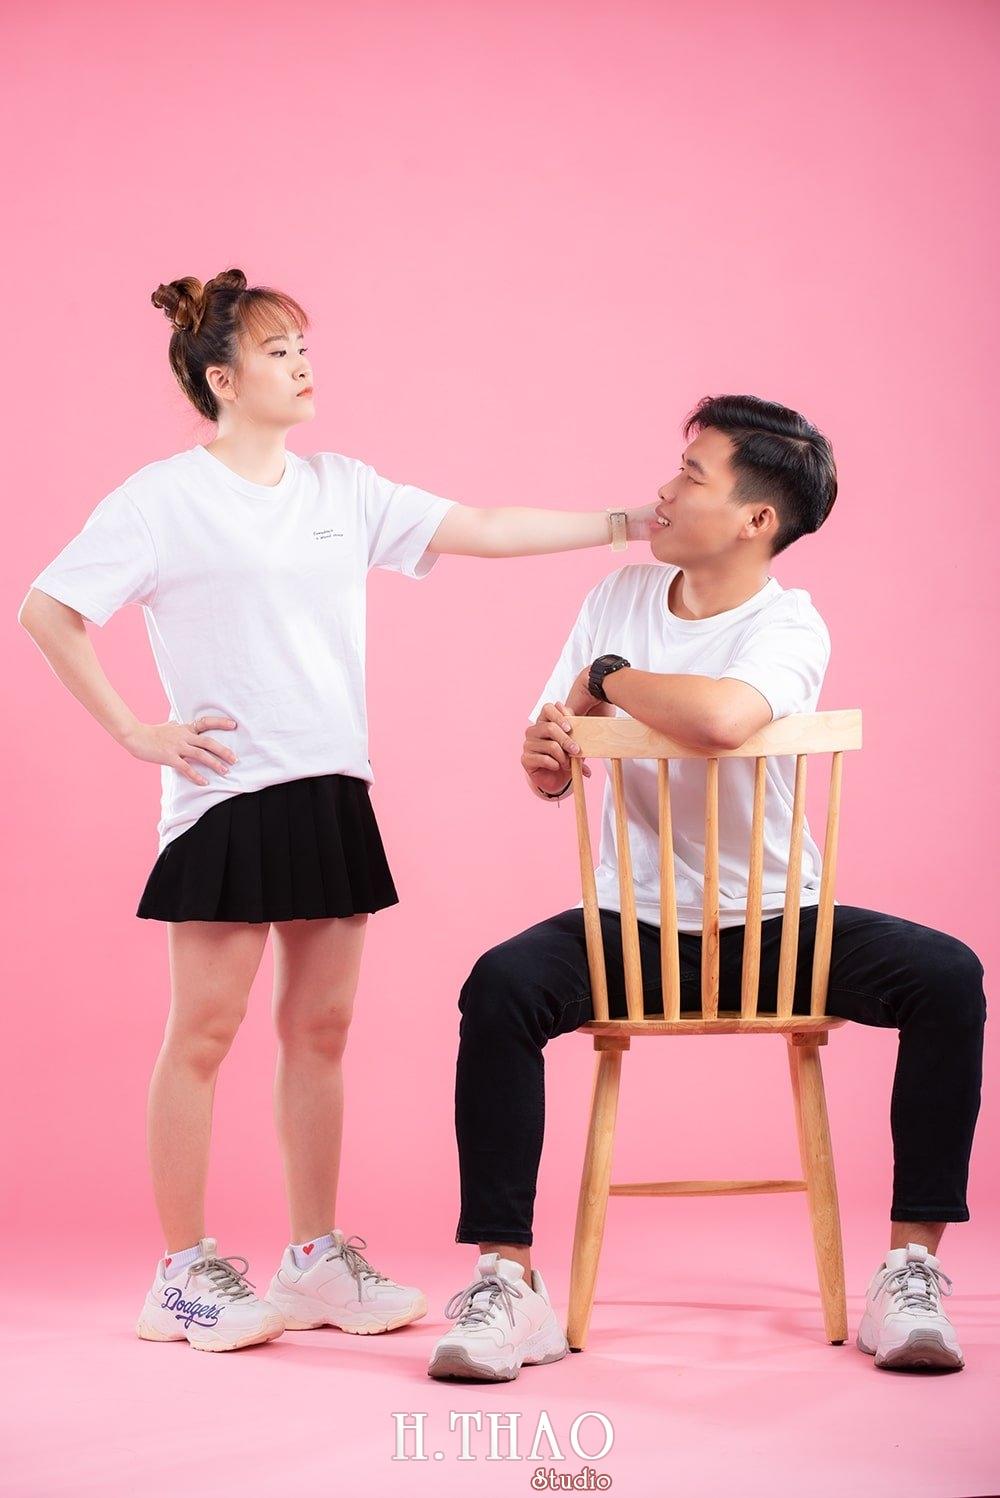 Anh couple 8 - 35 cách tạo dáng chụp ảnh đôi lãng mạn nhất - HThao Studio